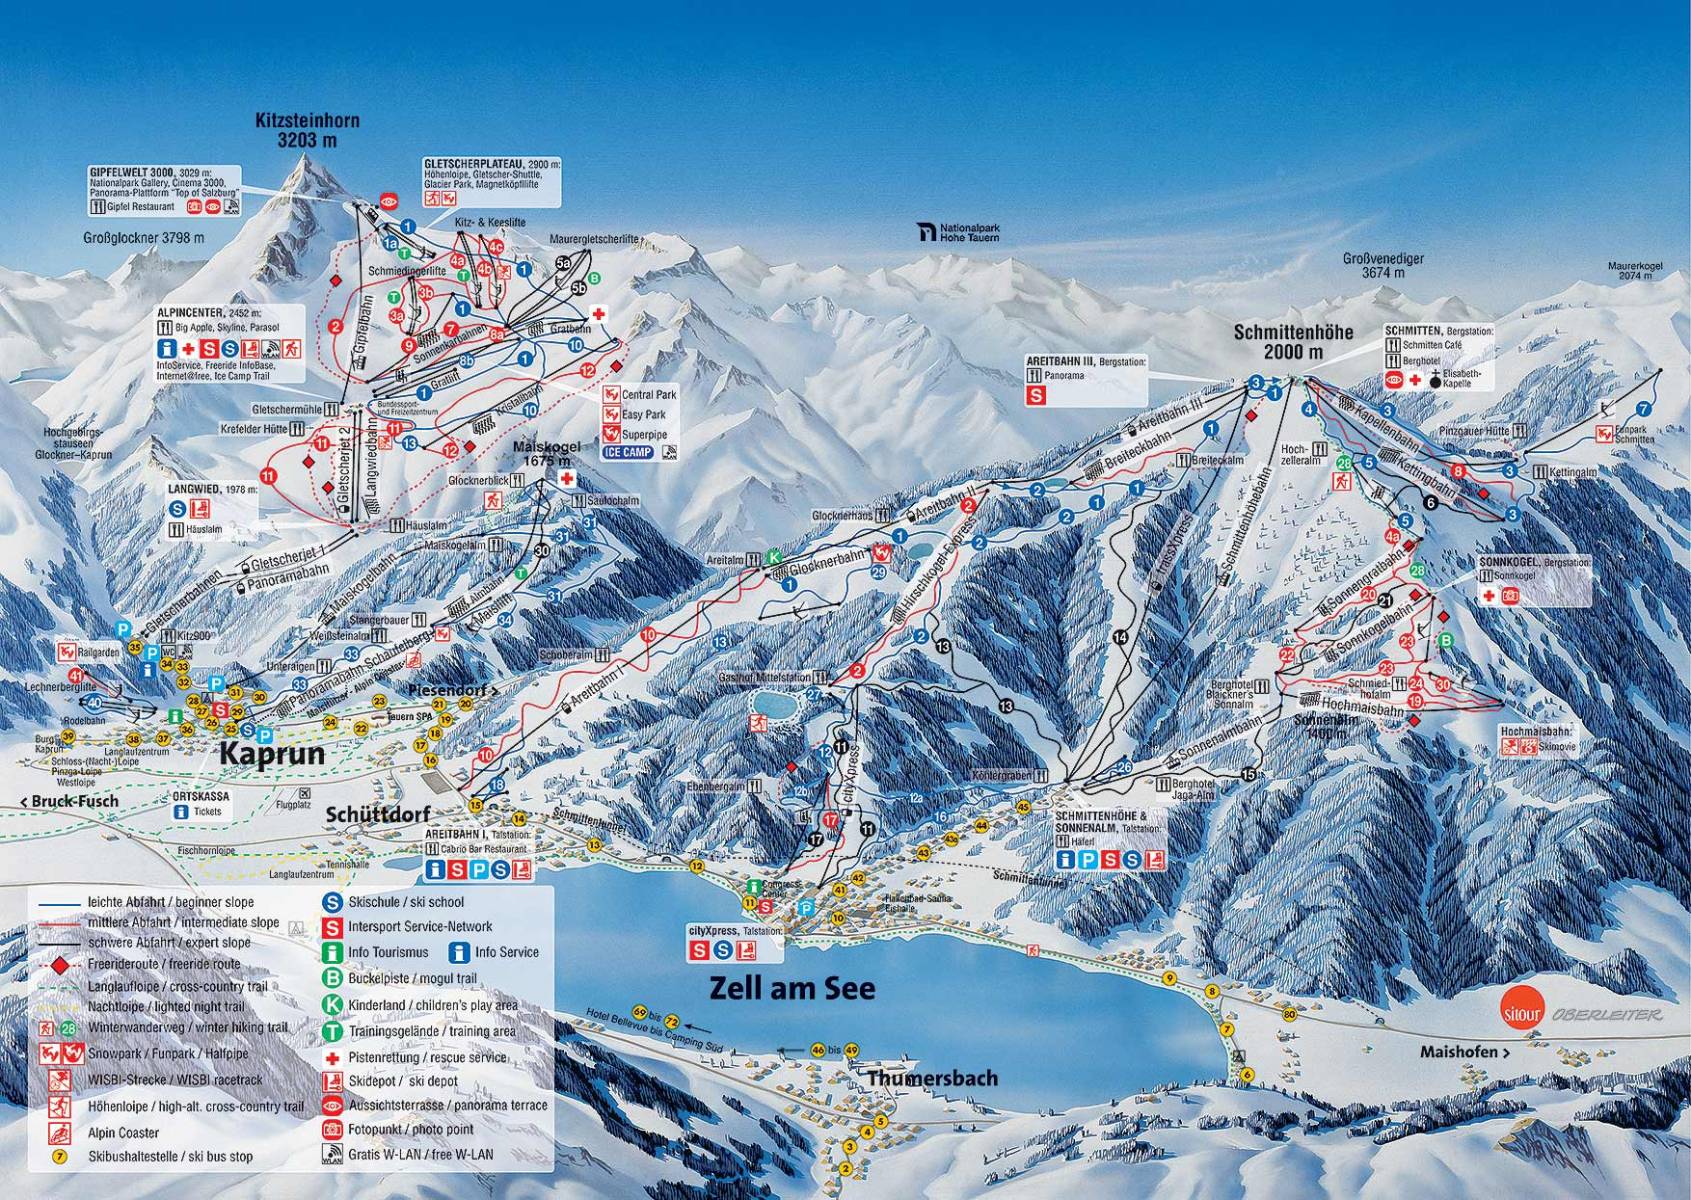 Курорти Целль-ам-Зеє (757 м) і Капрун (786 м) знаходяться в північній частині австрійських Альп, неподалік від Зальцбурга (область Пінцгау) і разом об'єднані в єдиний скі-пас Європа Спорт регіон (Europa Sport Region)